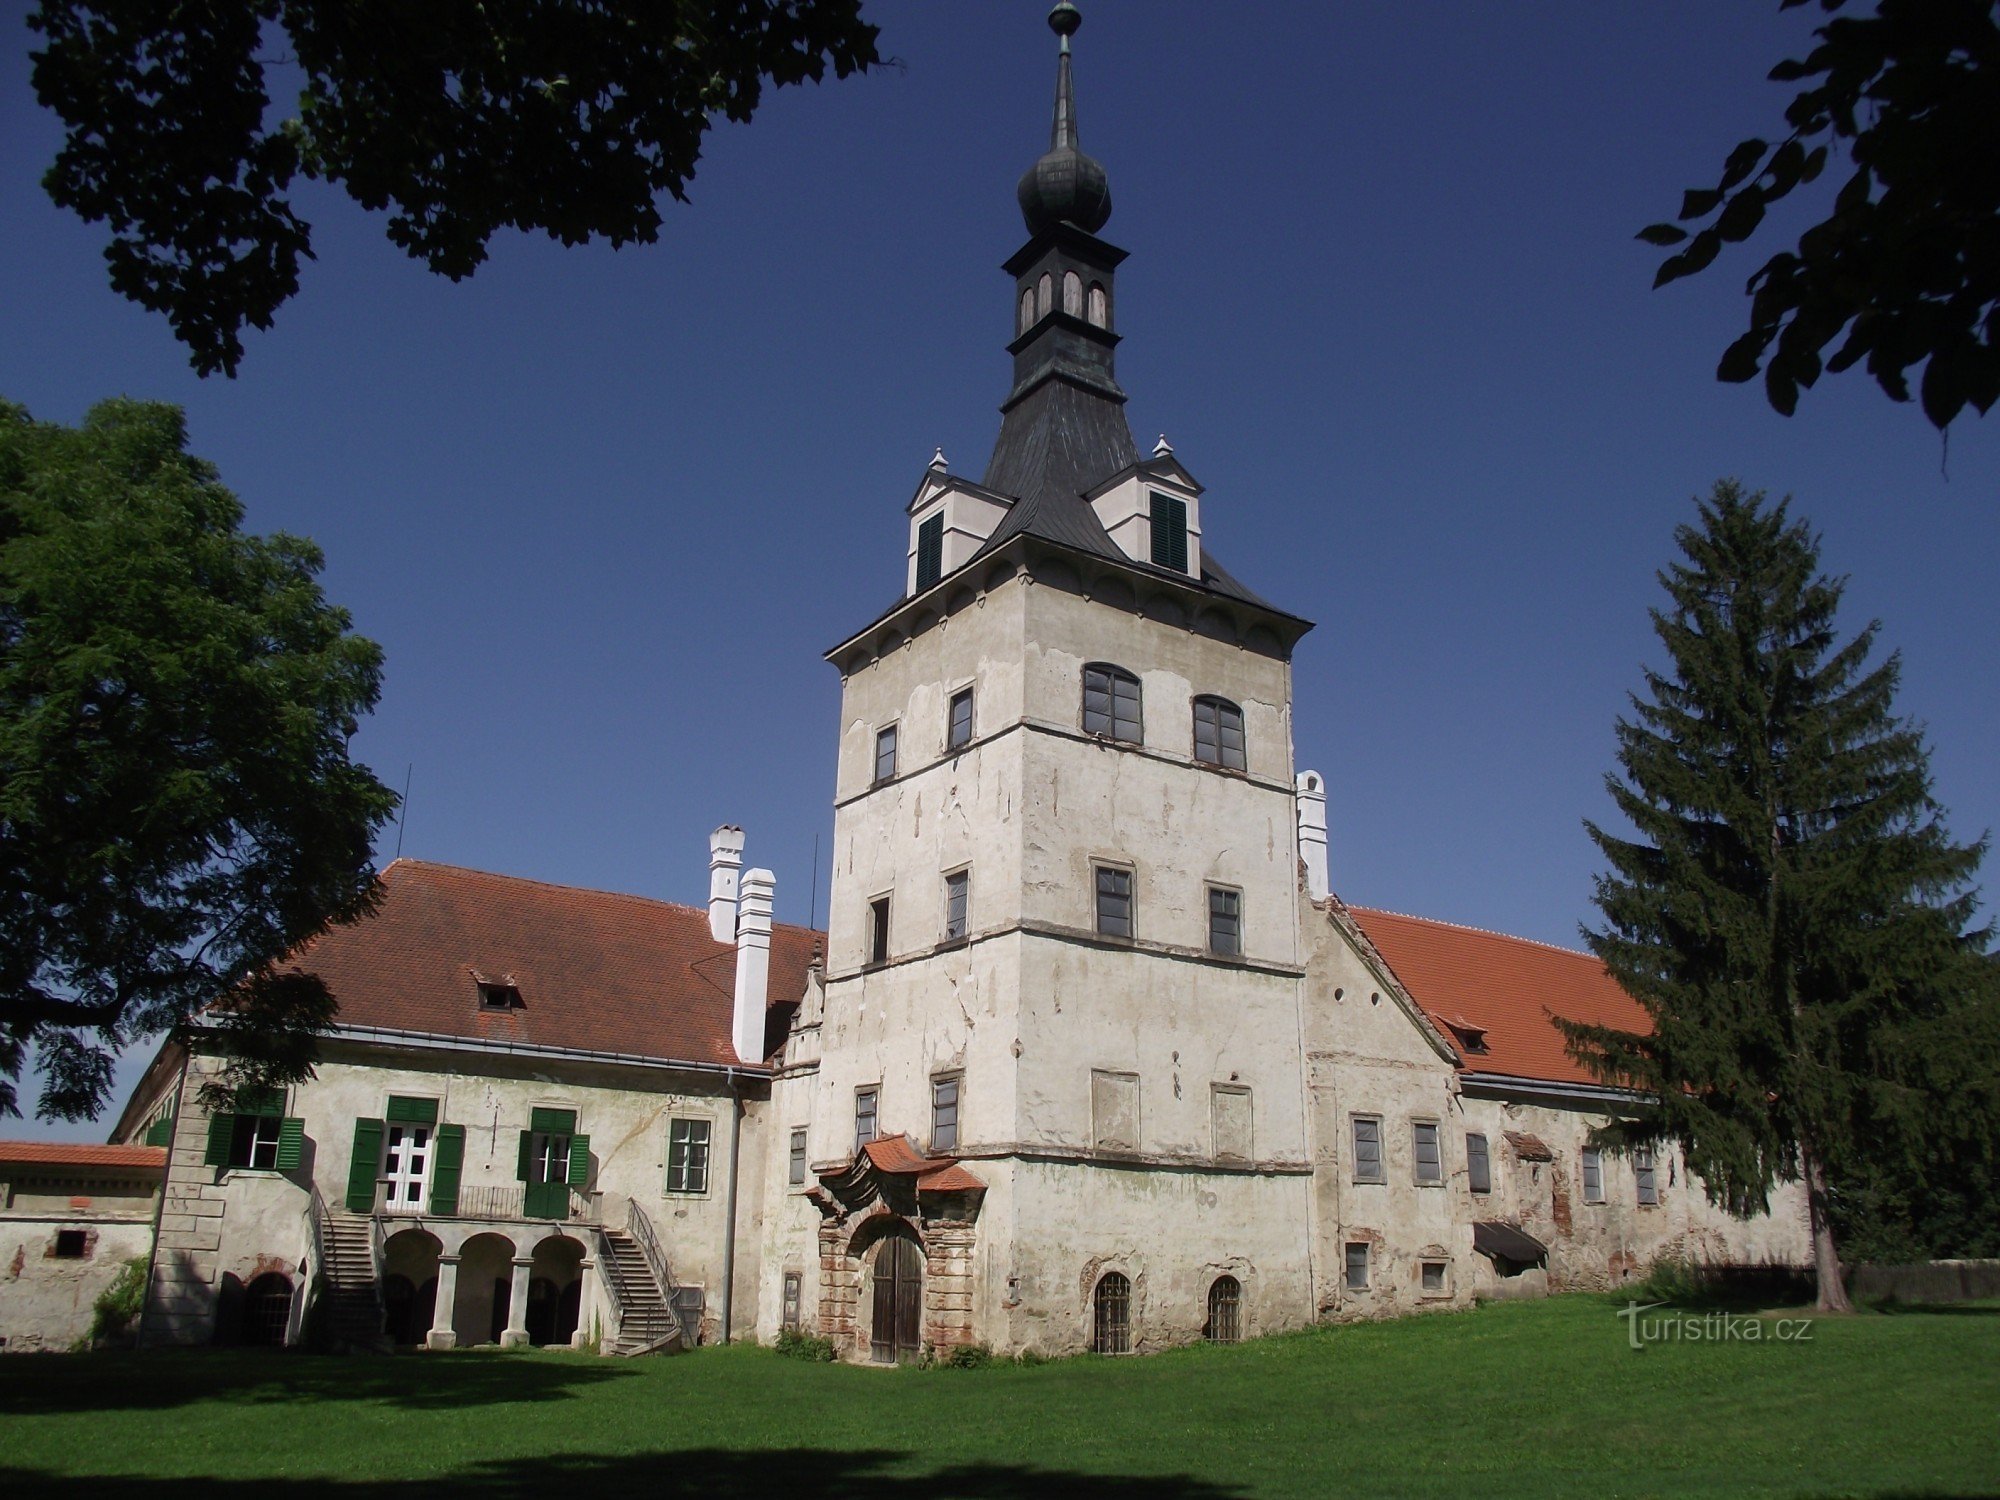 fachada oriental com uma torre renascentista